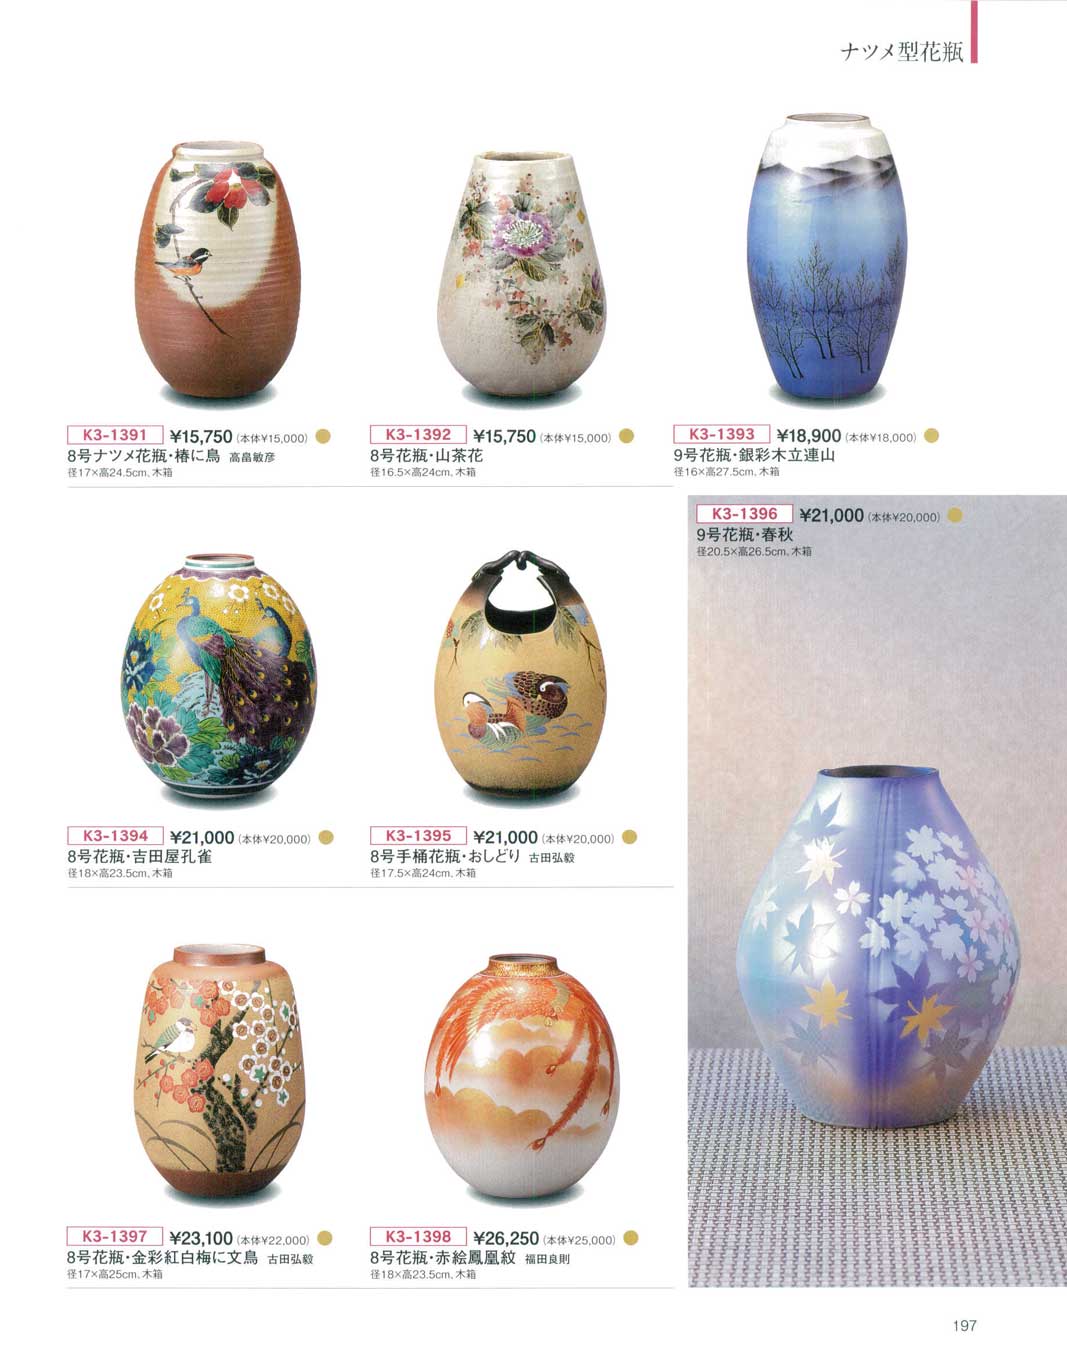 食器 ナツメ型花瓶九谷焼総合カタログＫ－３－197ページ